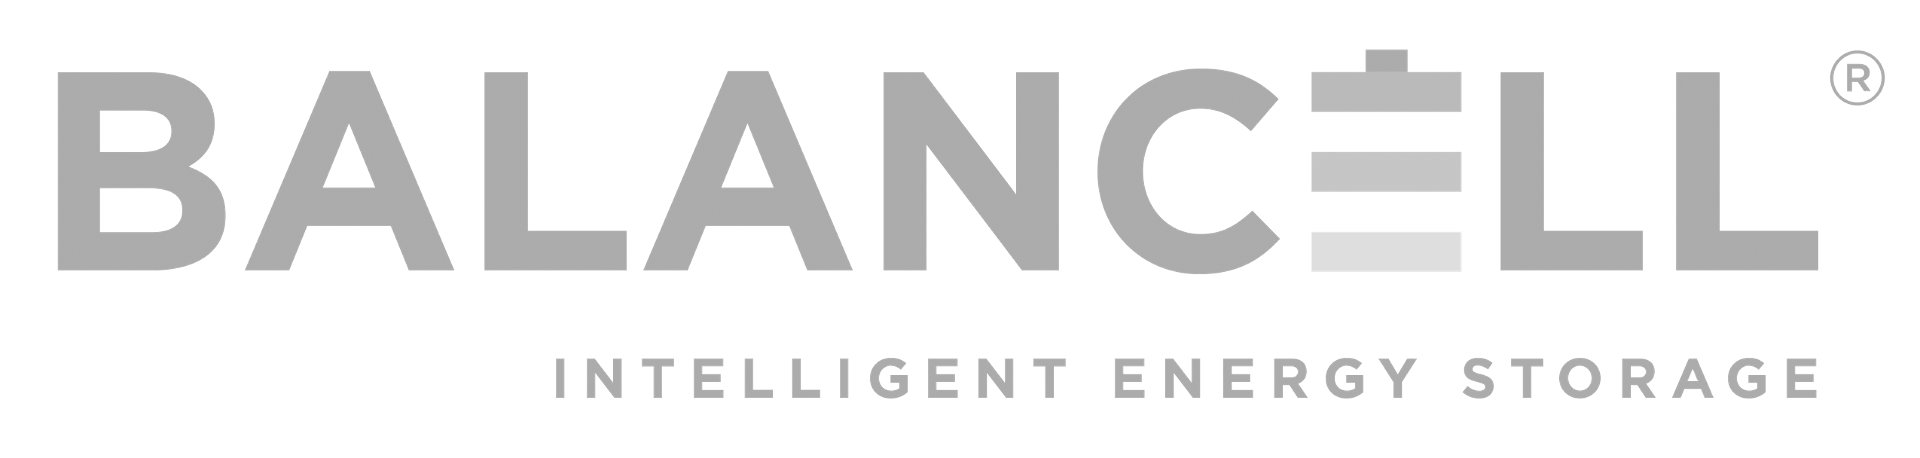 Balancel logo